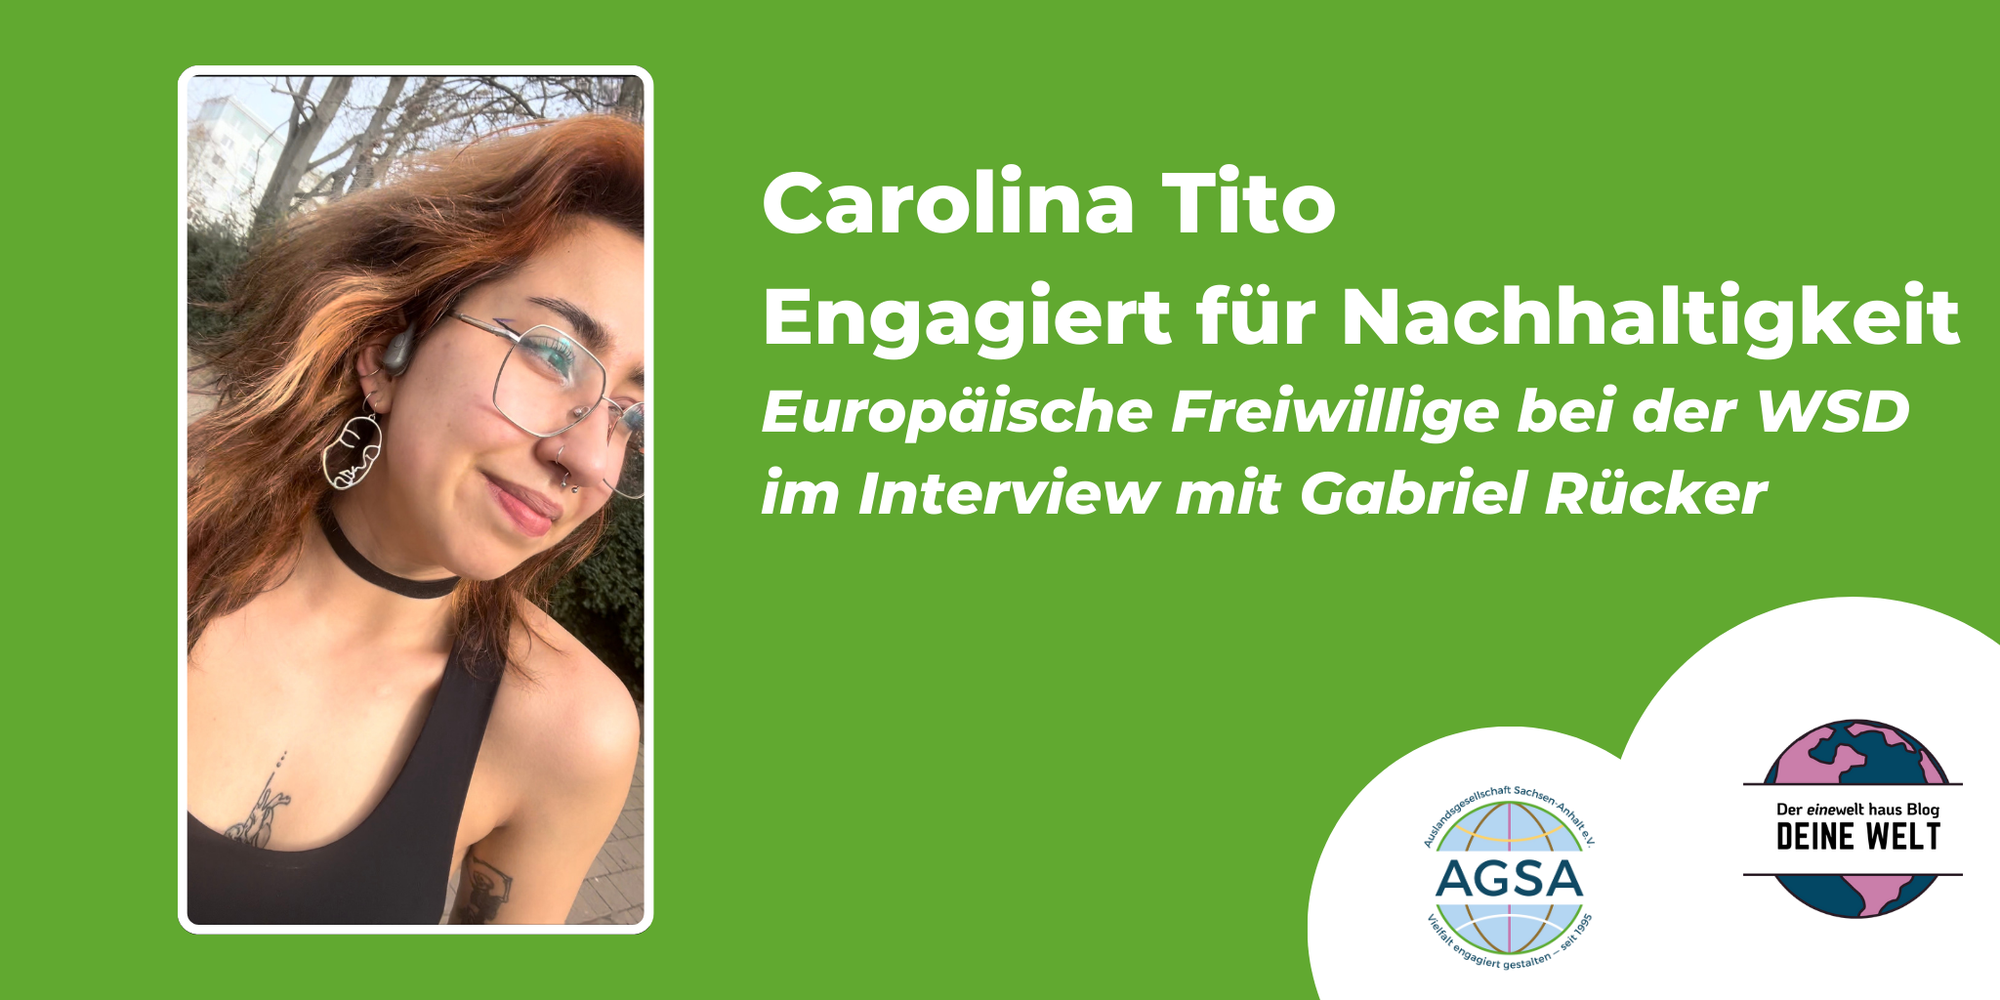 Carolina Tito - Engagiert für Nachhaltigkeit